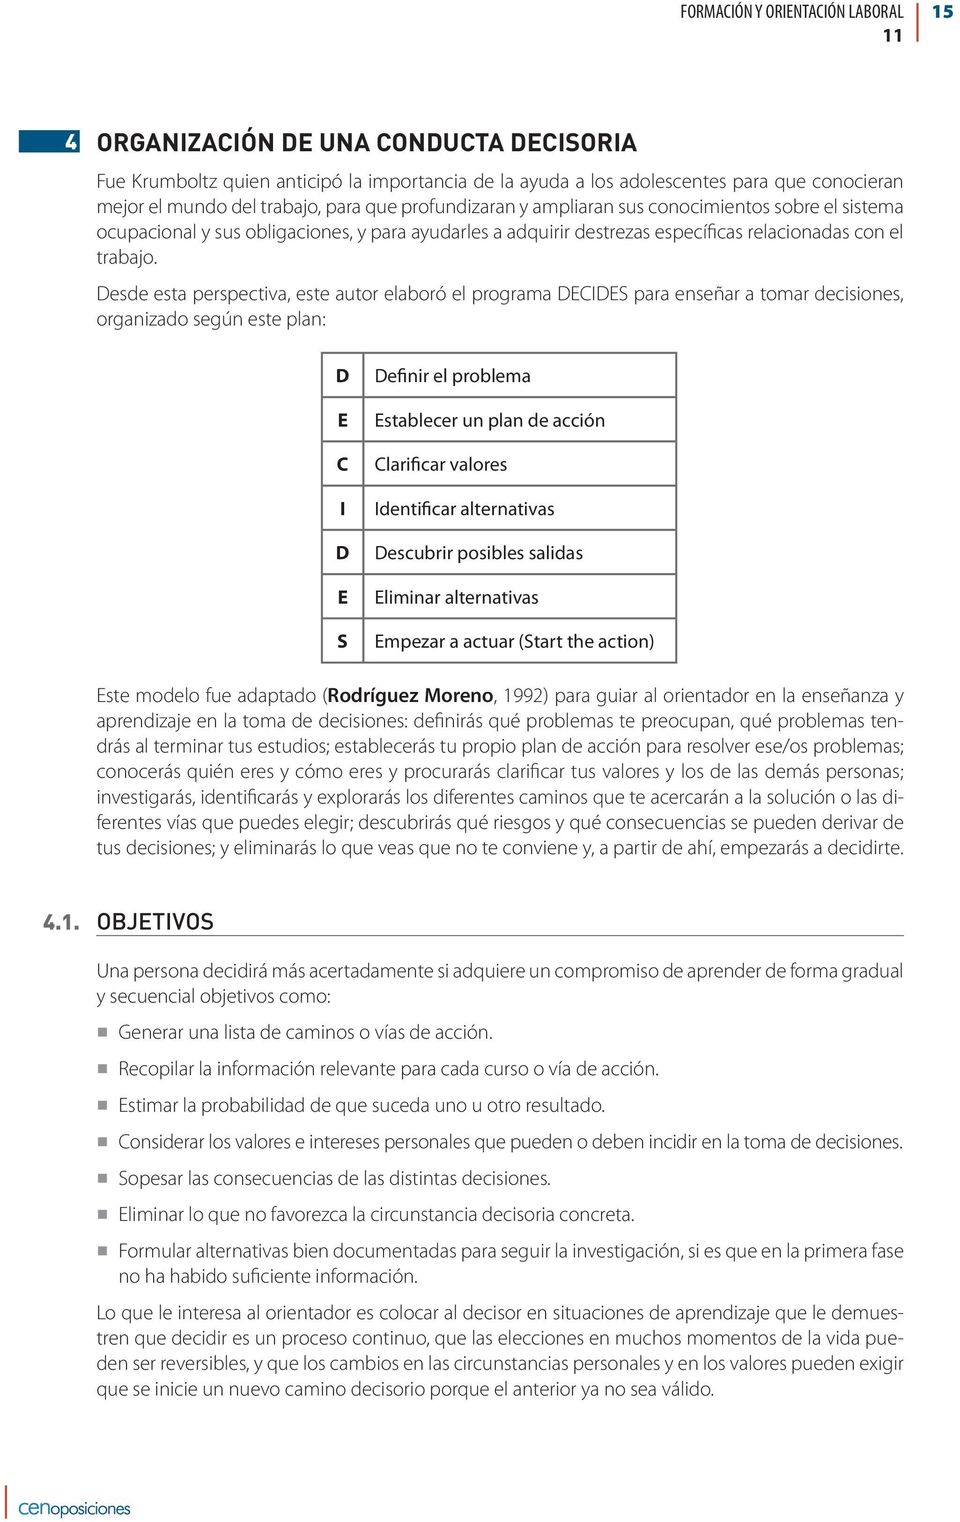 FORMACIÓN Y ORIENTACIÓN LABORAL - PDF Free Download